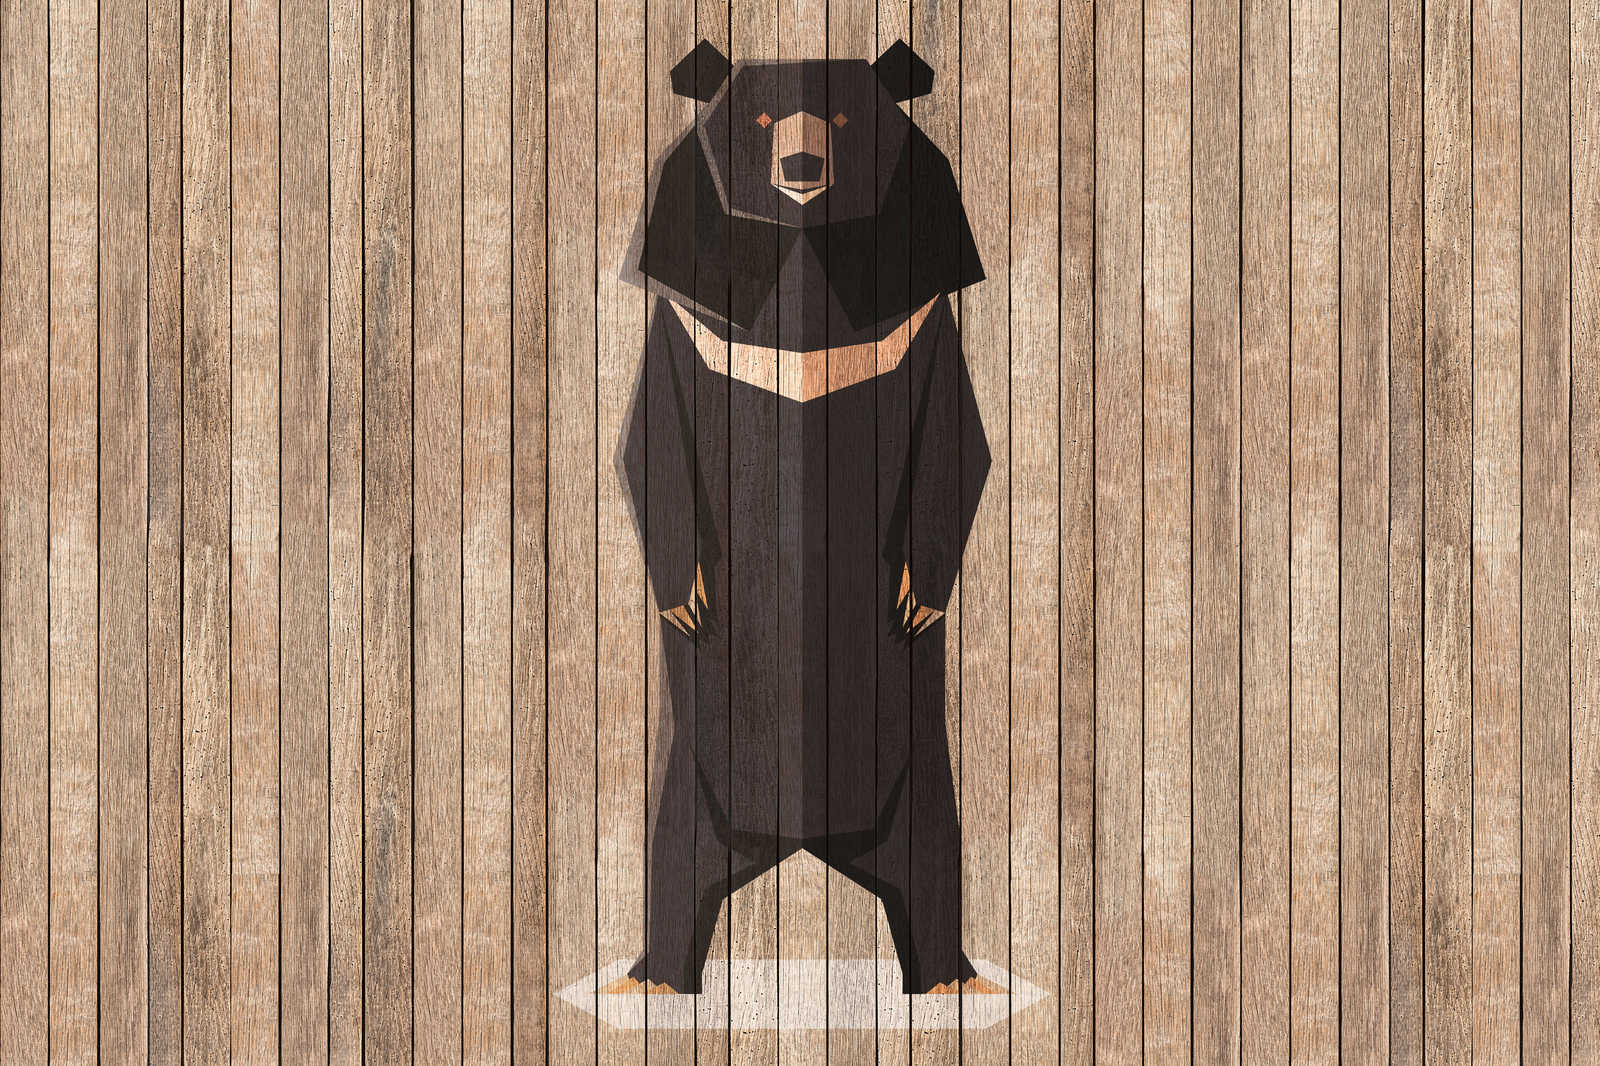             Born to Be Wild 1 - Quadro su tela da parete con orsi - Pannelli di legno - 0,90 m x 0,60 m
        